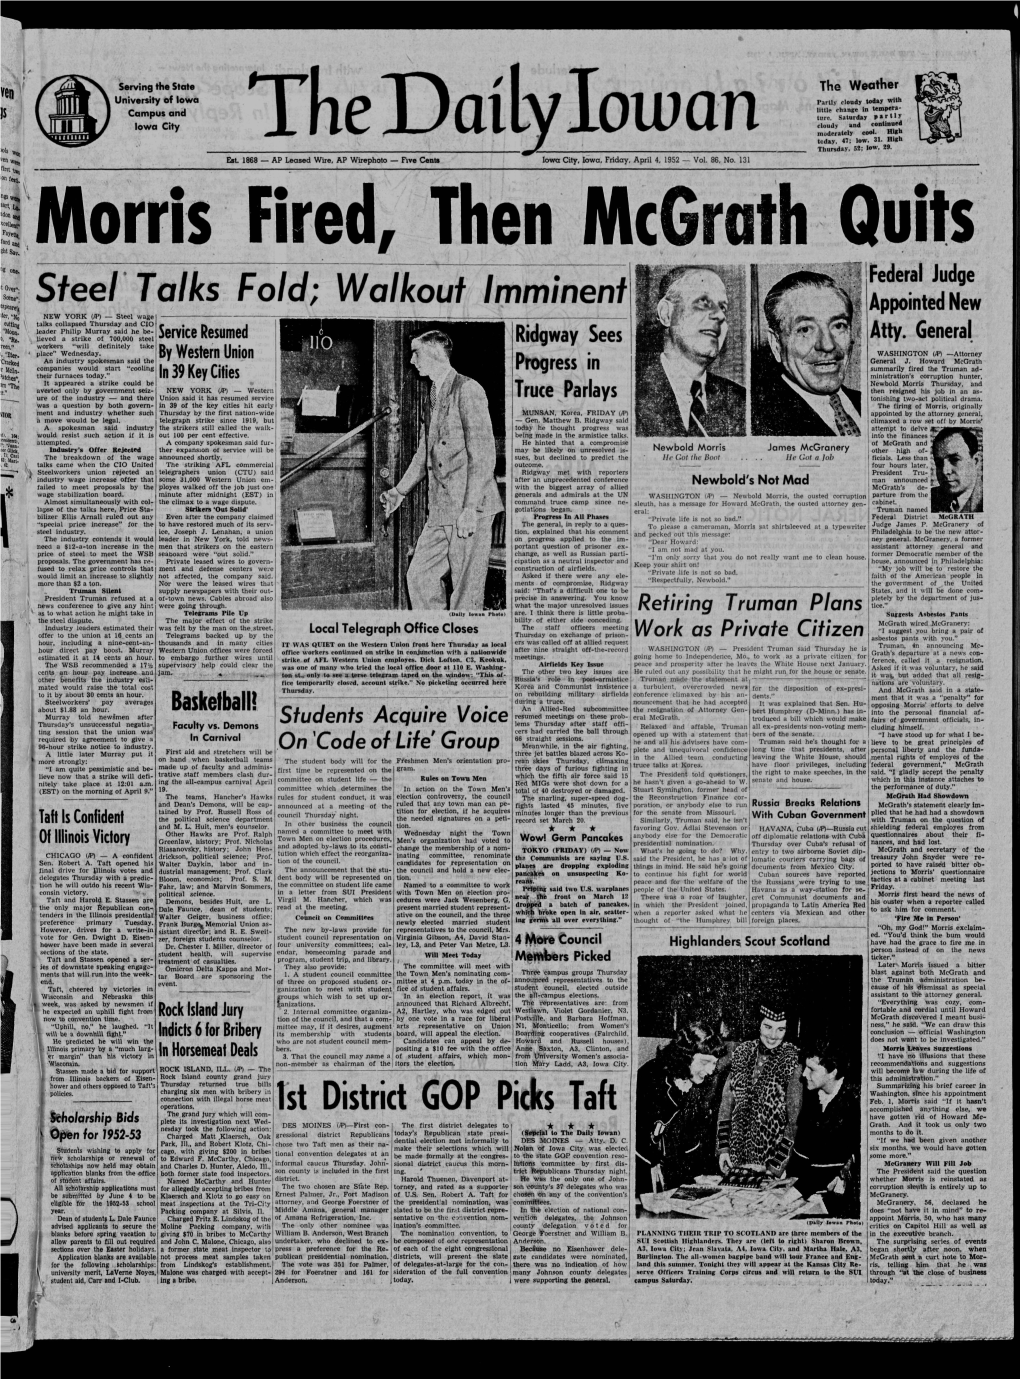 Daily Iowan (Iowa City, Iowa), 1952-04-04